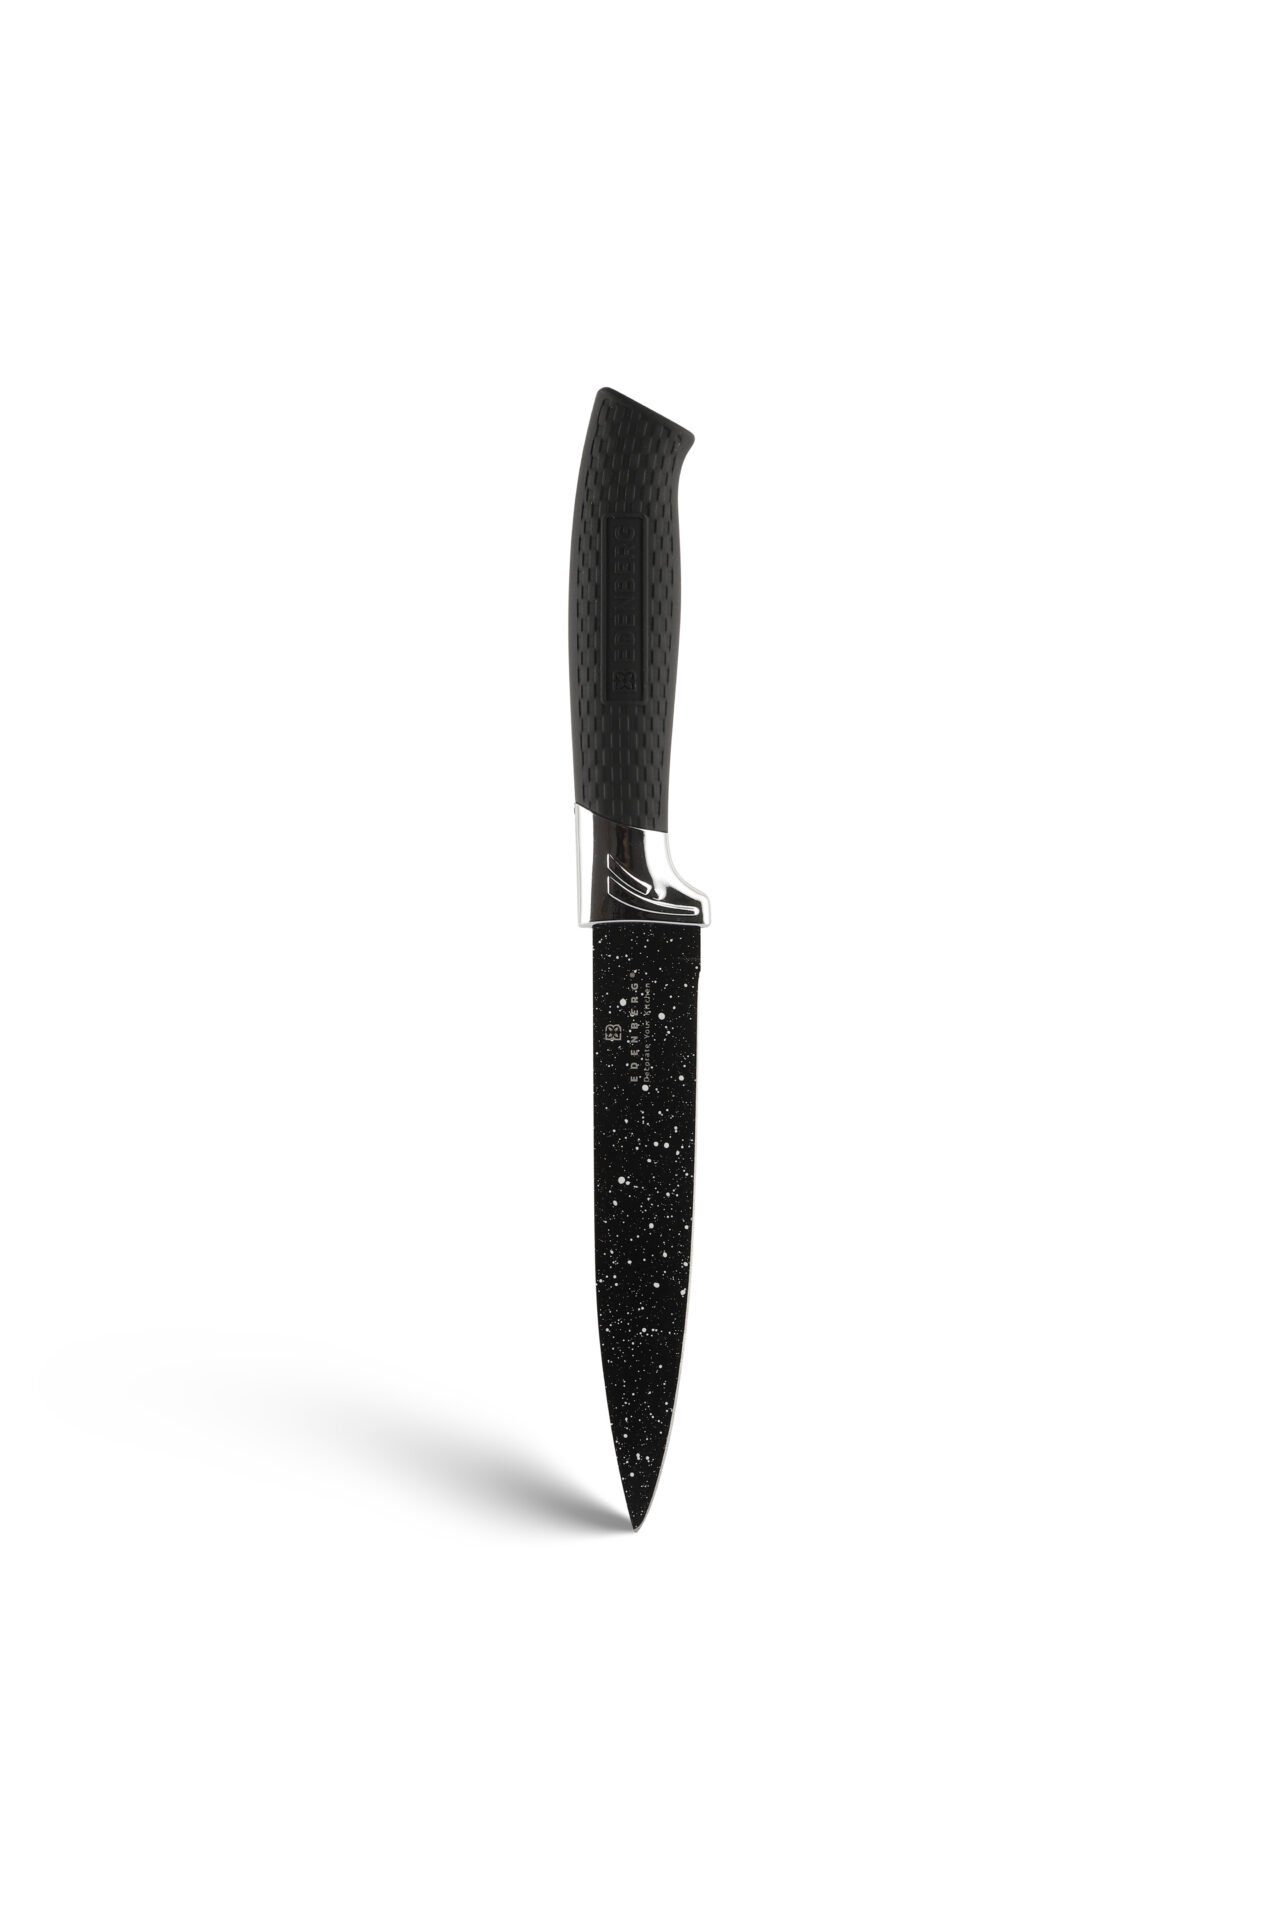 Edenberg Messer-Set Modernes schwarzes Messerset Zeitloses Topfsets. (6-tlg., des Messerblock Eine mit Design Geschenkidee) ideale Block